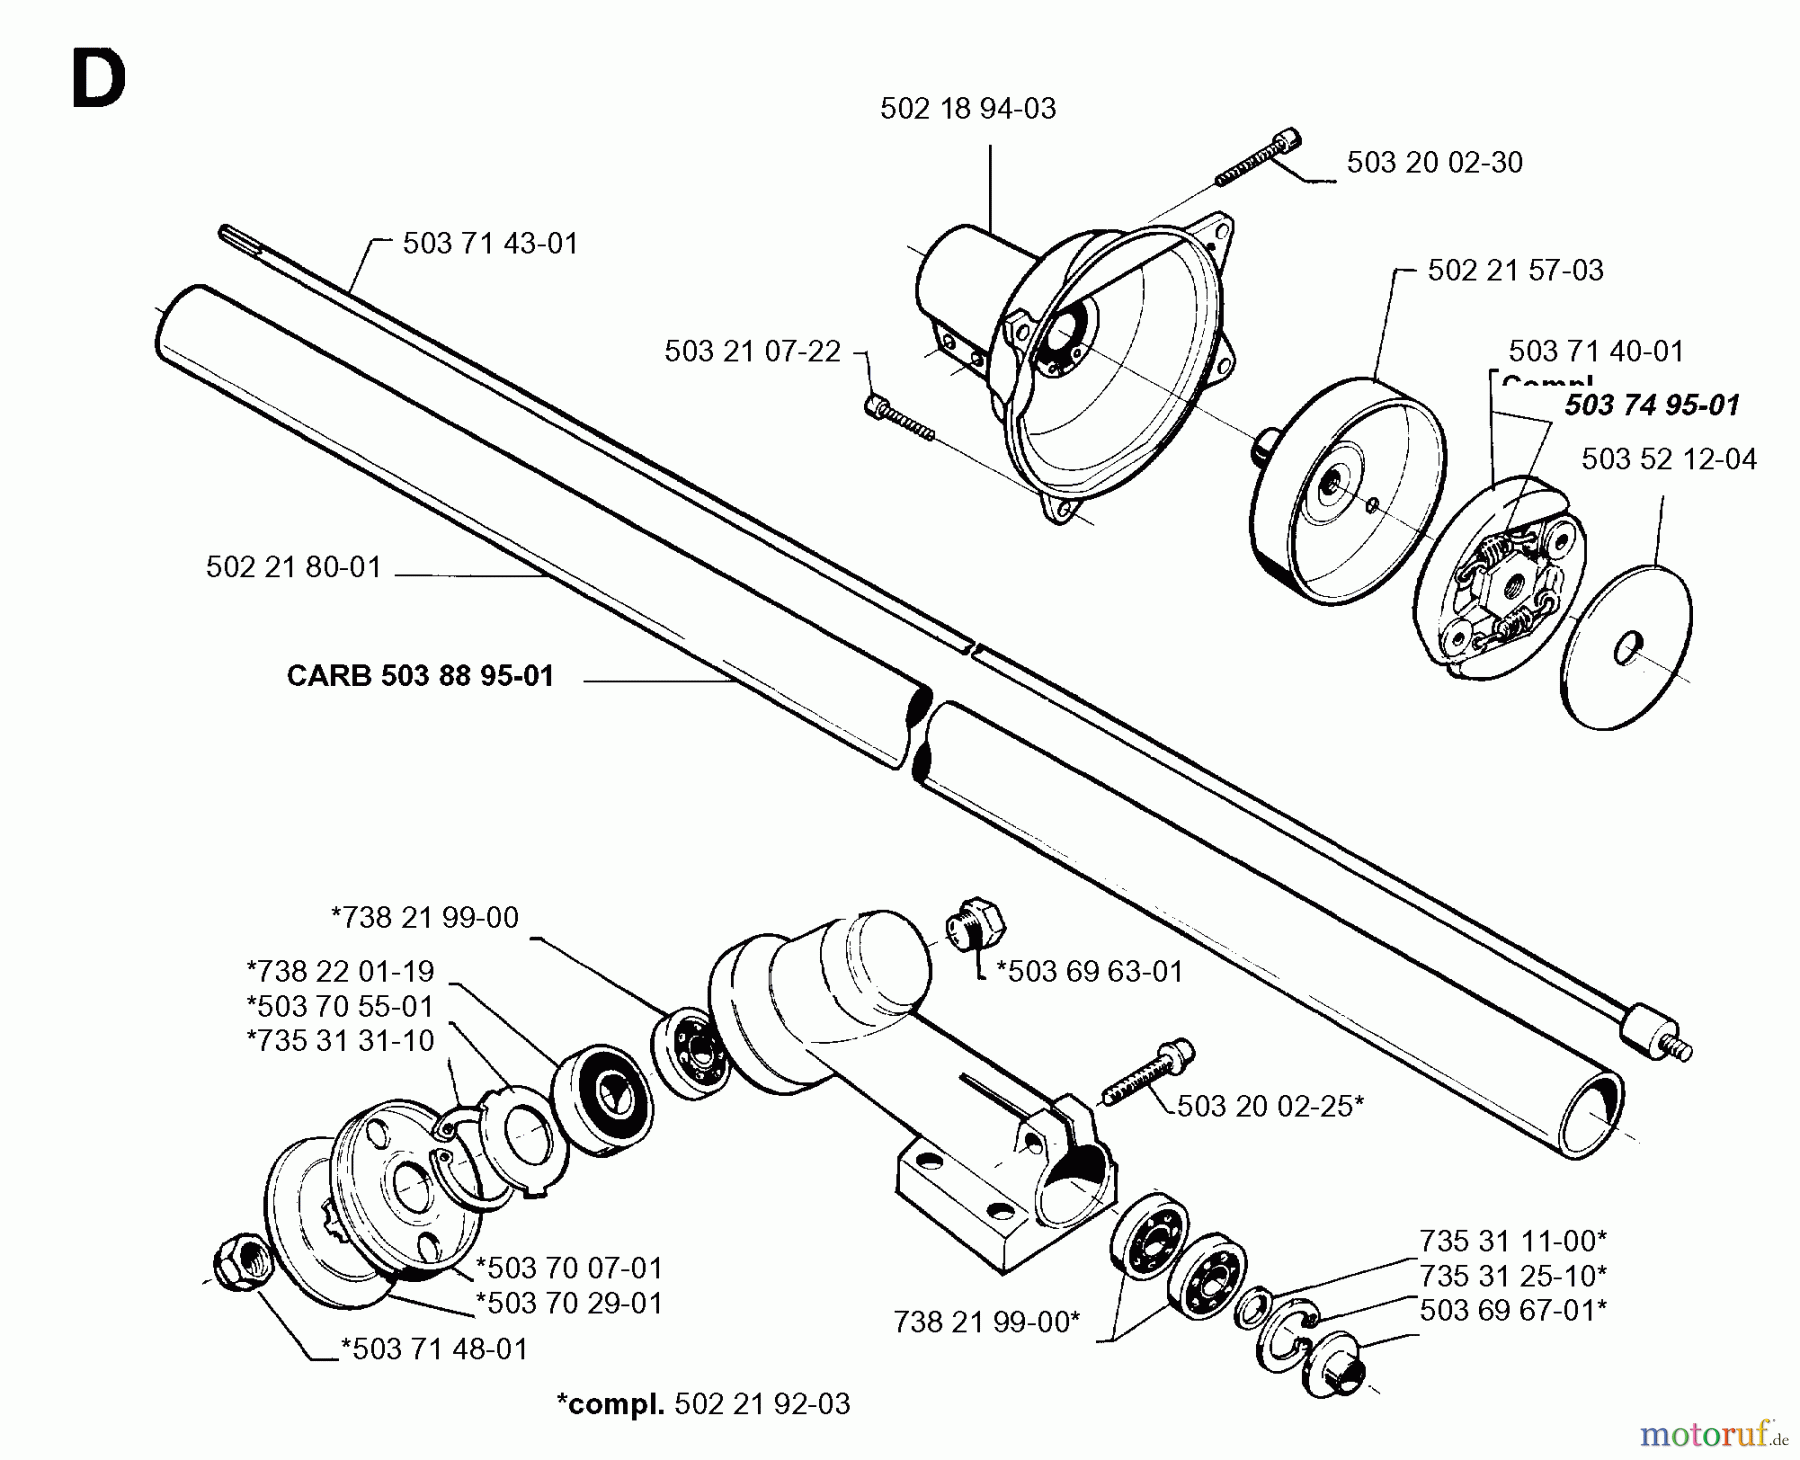  Jonsered Motorsensen, Trimmer GR32 - Jonsered String/Brush Trimmer (1996-06) BEVEL GEAR SHAFT